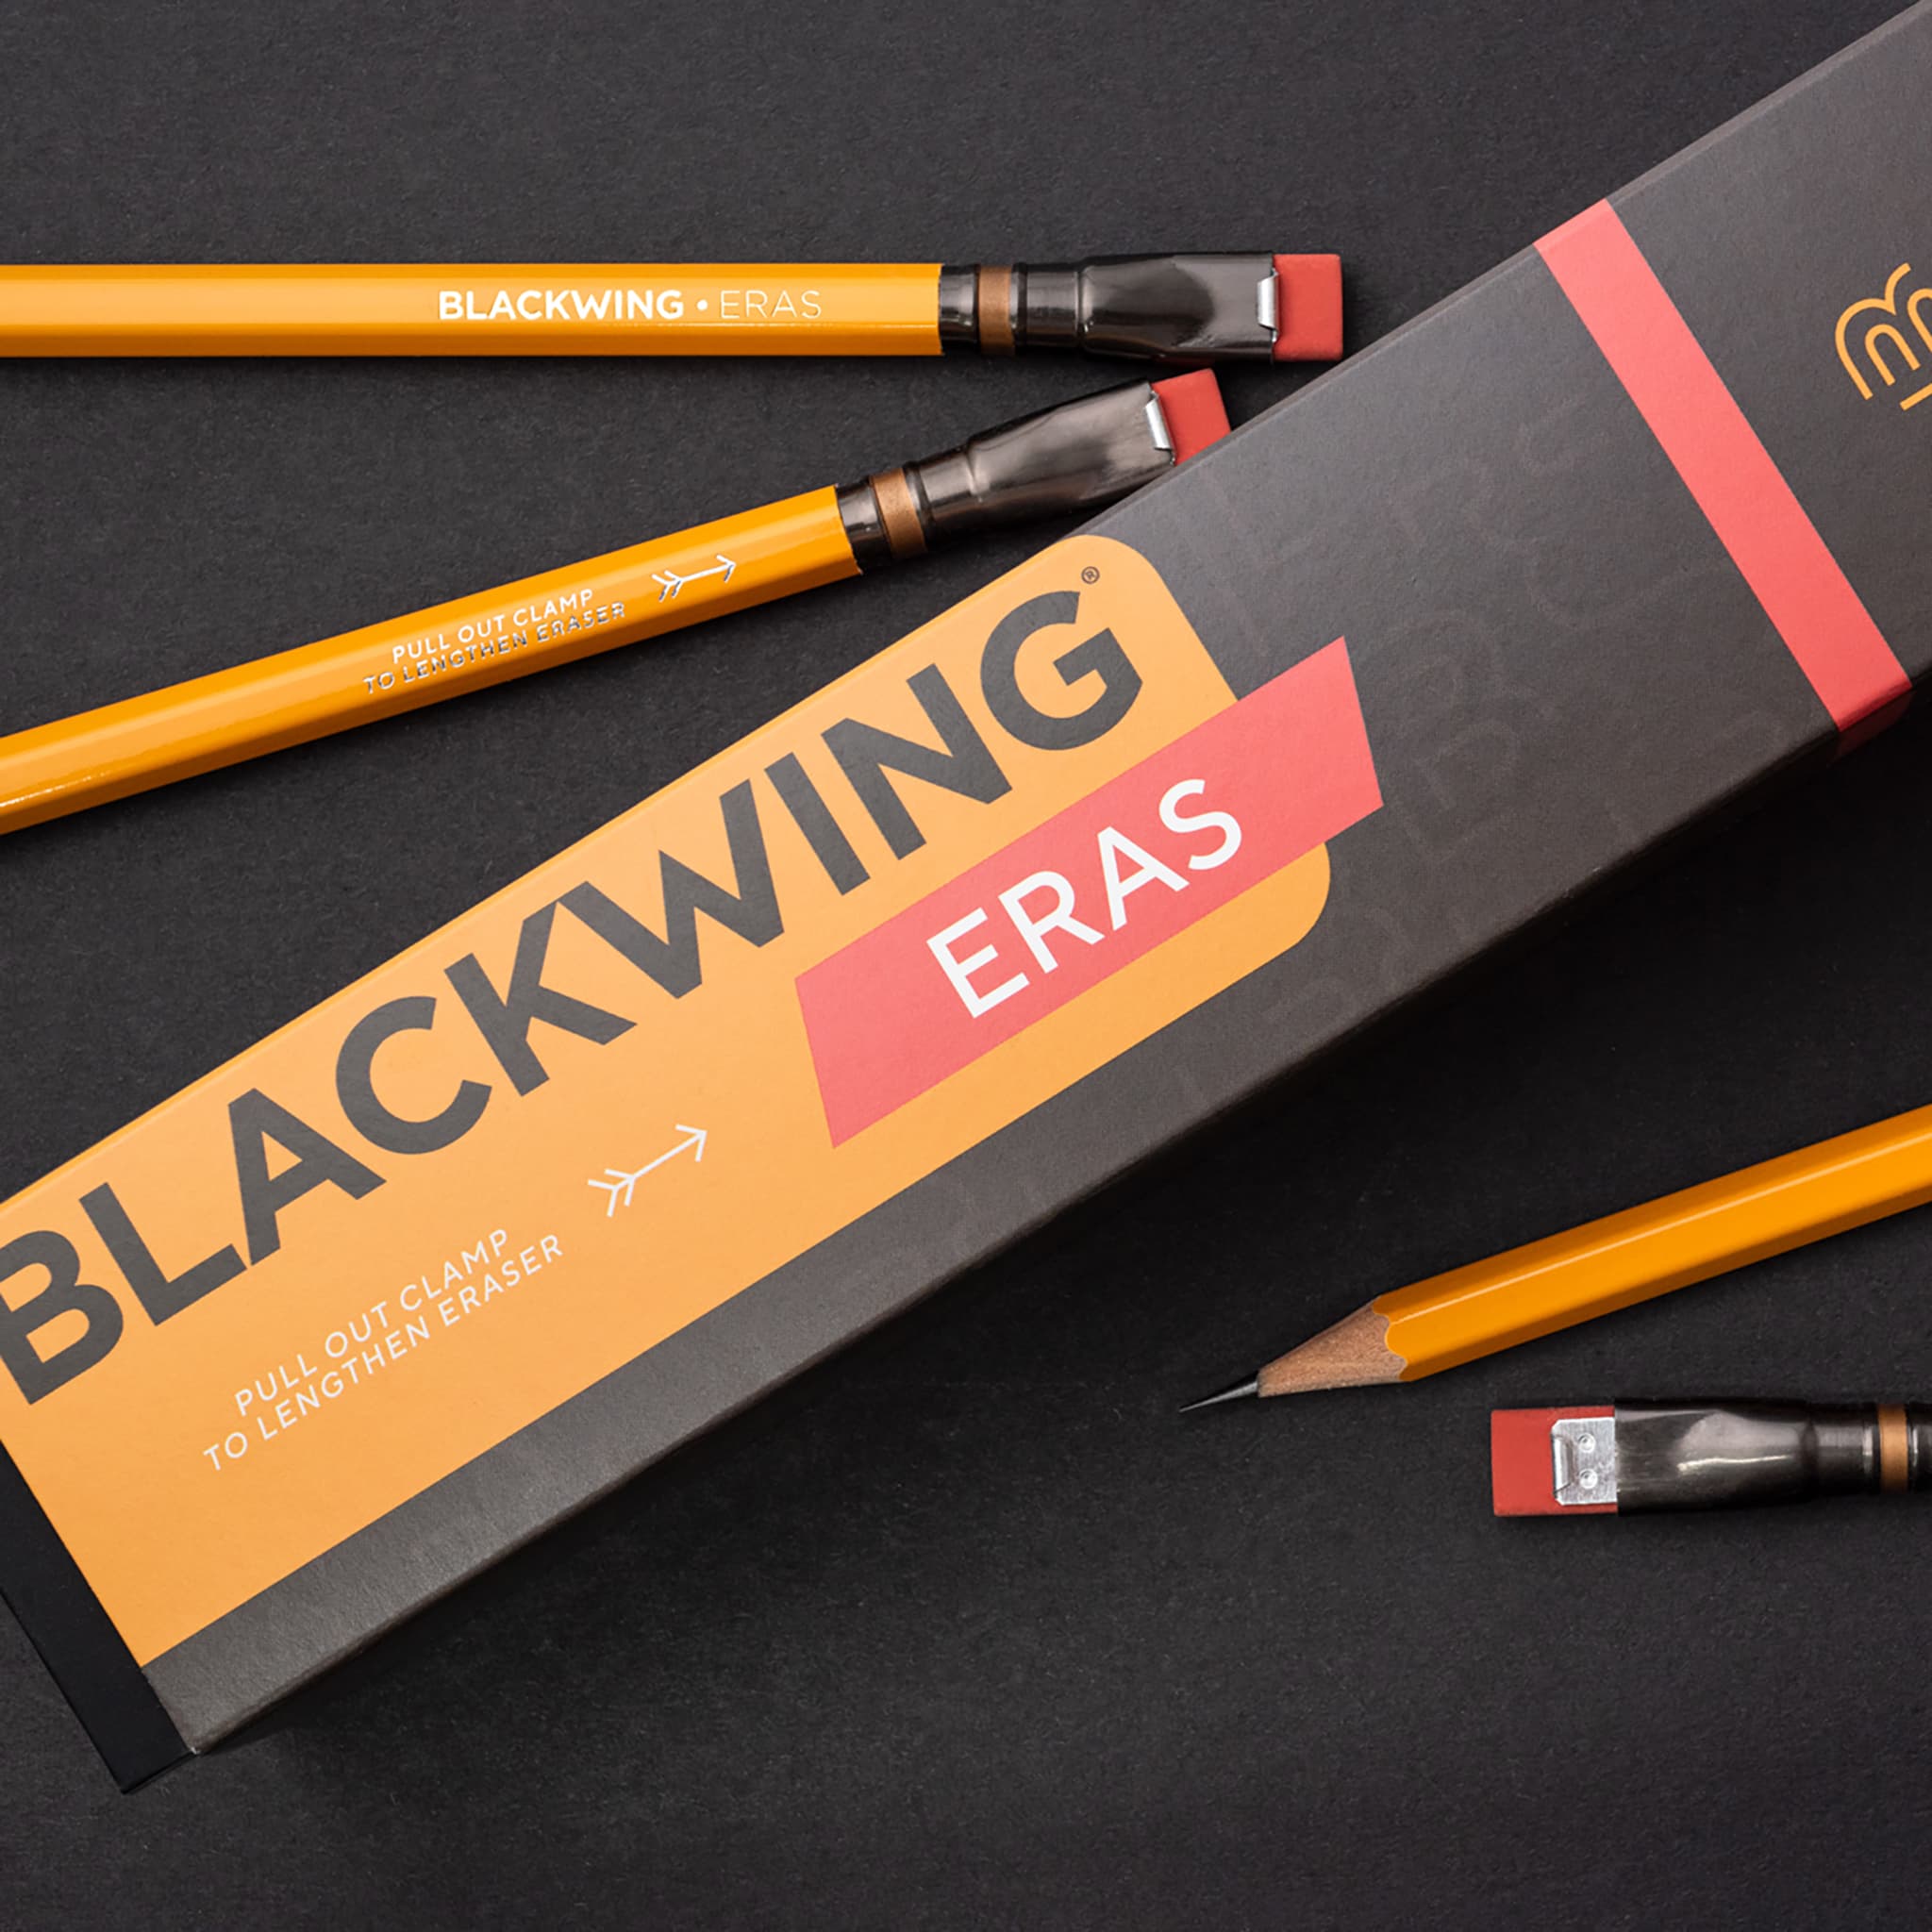 ブラックウィング公式オンラインストア – BLACKWING ONLINE